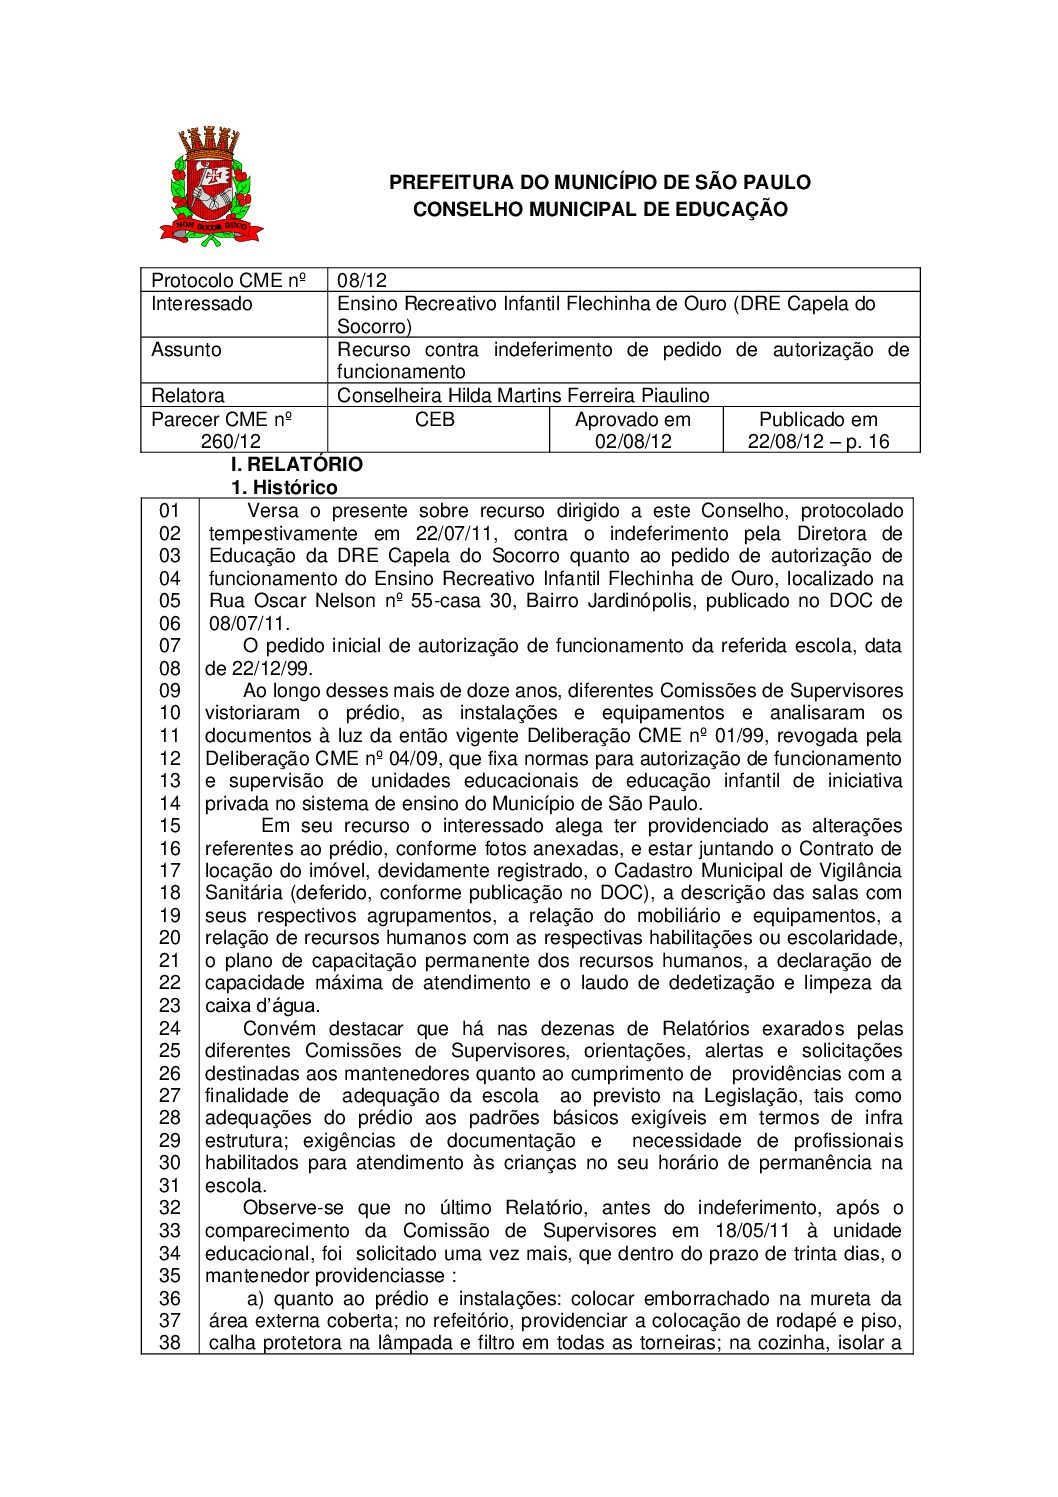 Parecer CME nº 260/2012 - Ensino Recreativo Infantil Flechinha de Ouro (DRE Capela do Socorro) - Recurso contra indeferimento de pedido de autorização de funcionamento 